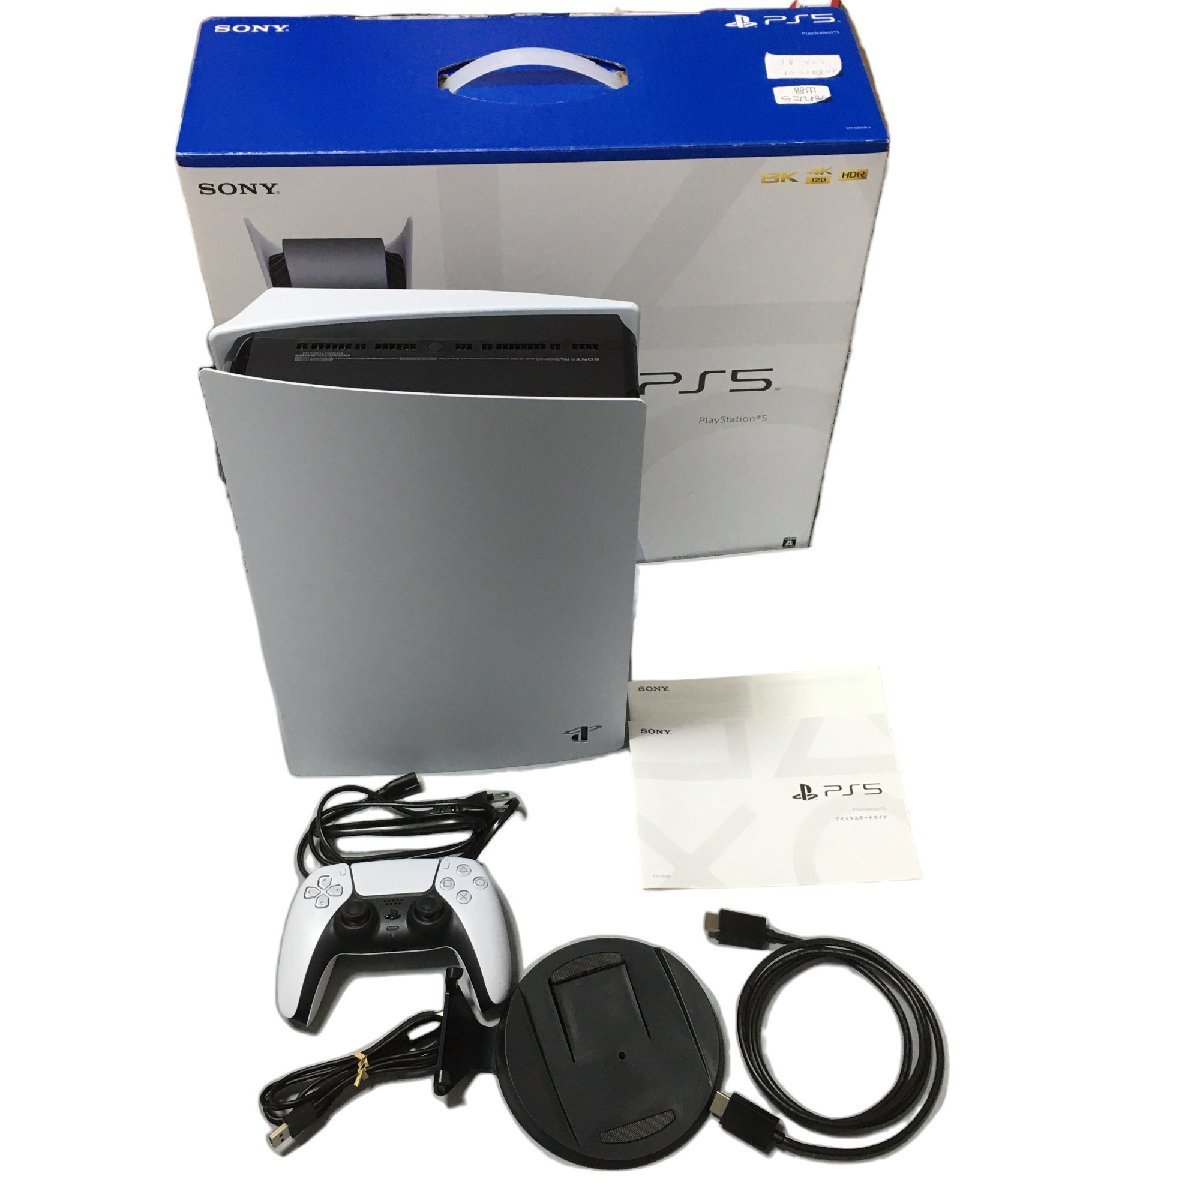 PS5 ディスクドライブ搭載モデル CFI-1200A ver22.02-06.02.00.04 本体 